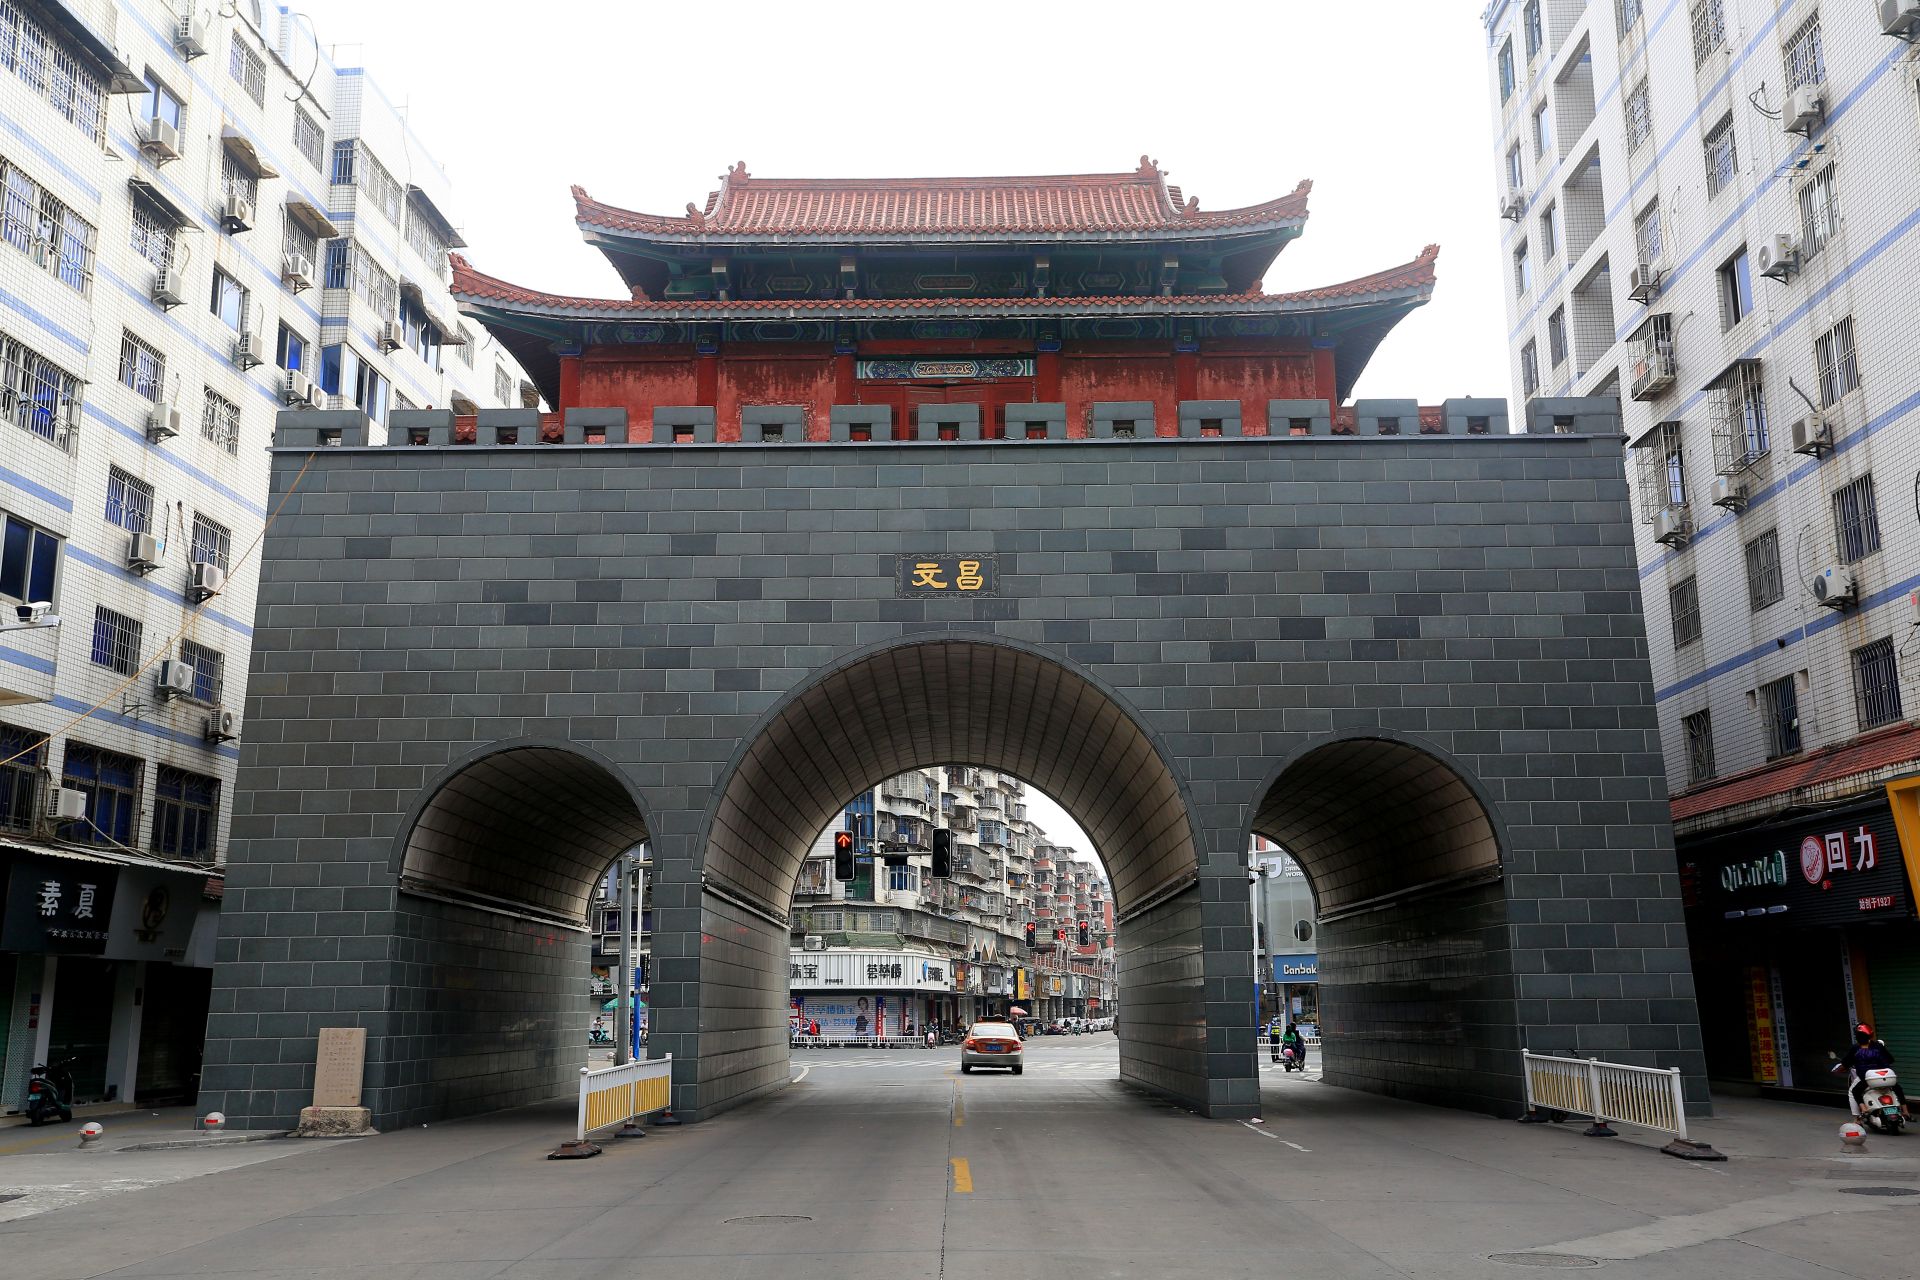 漳州文昌门,地标性城门,必逛一条街 #百家号星火计划# 文昌门是漳州